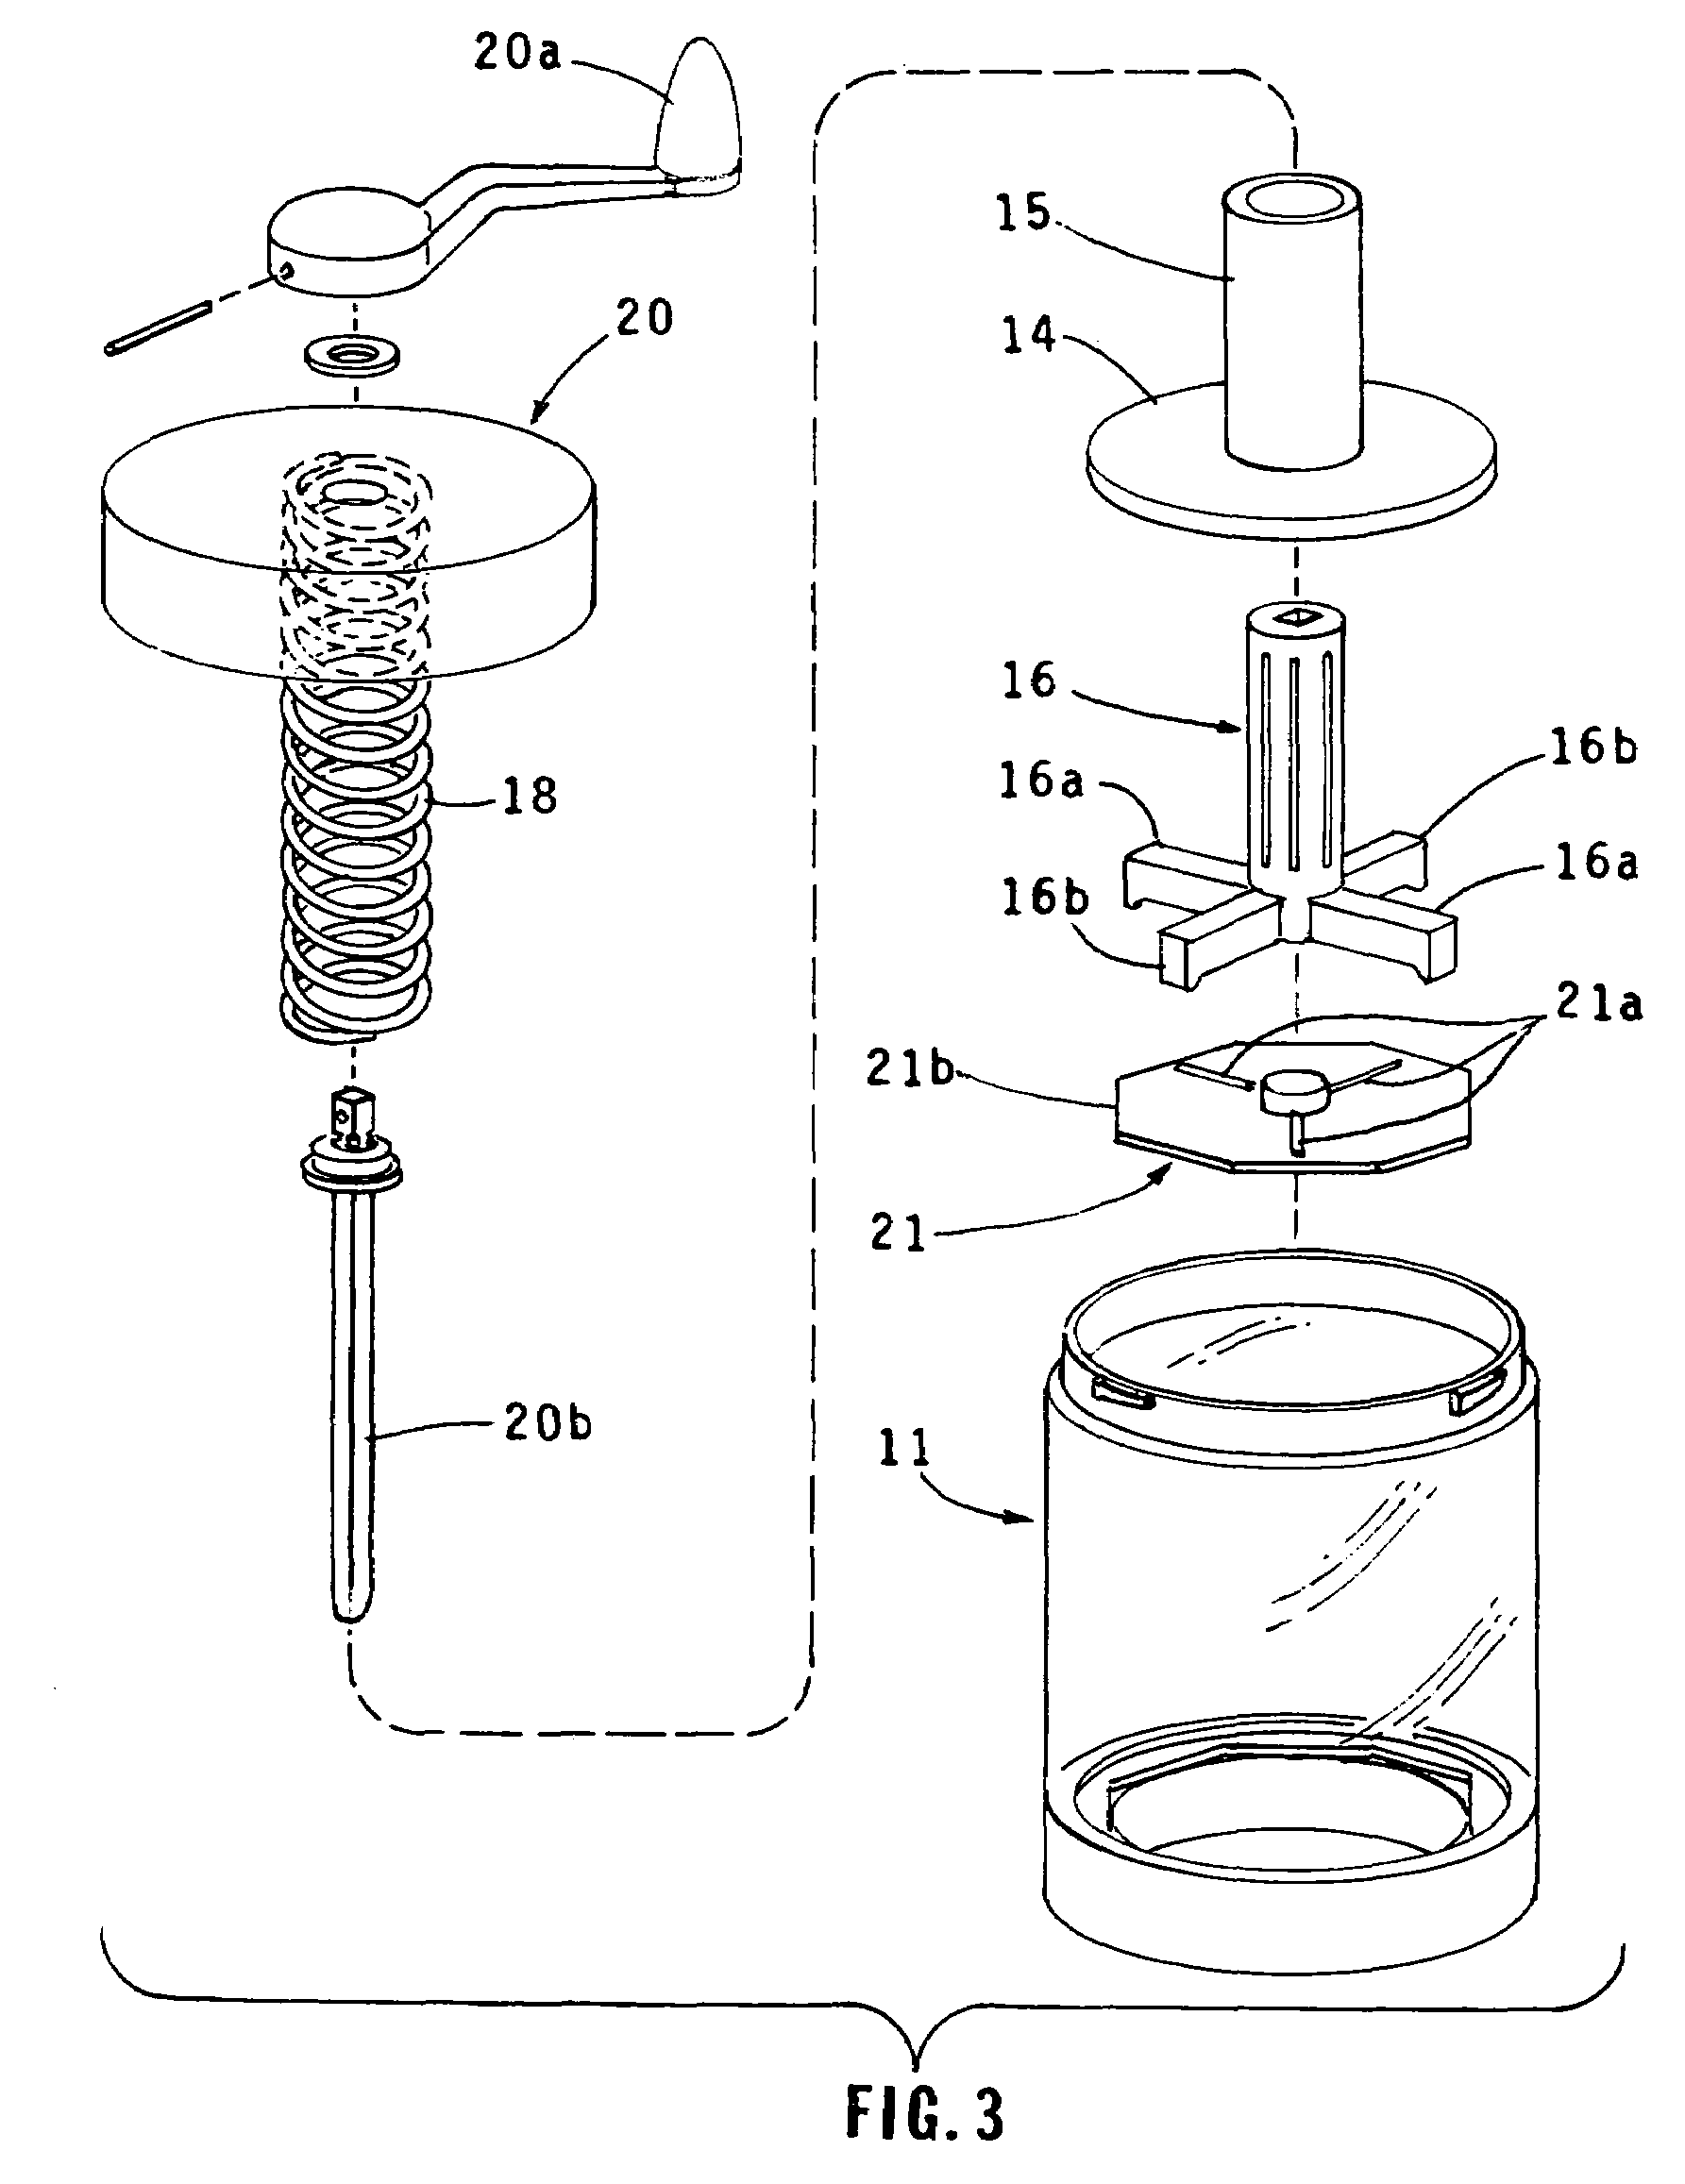 Slicing condiment grinder